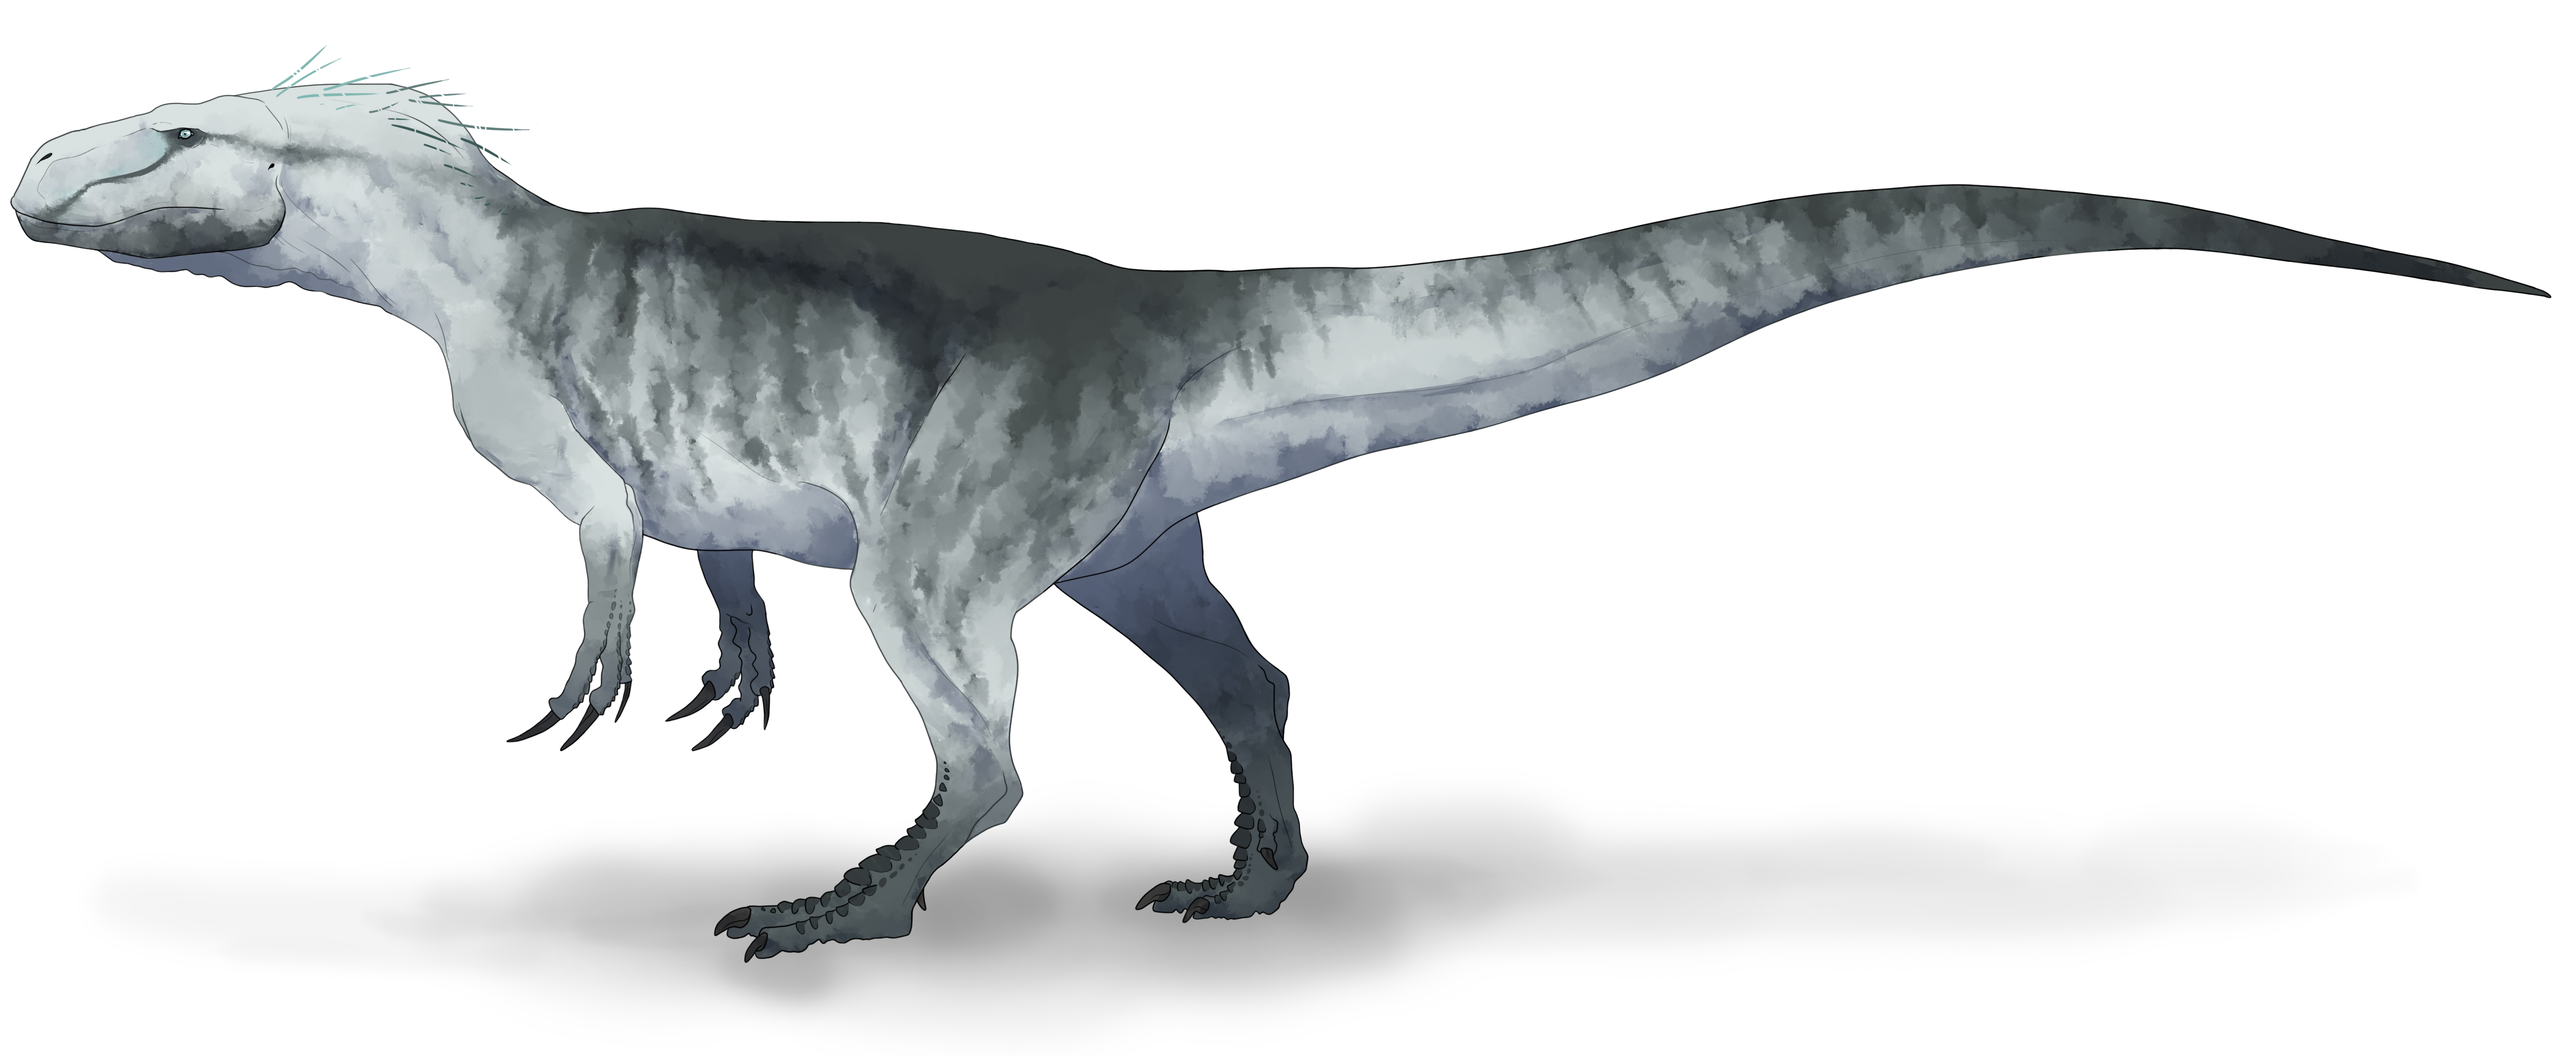 Současná představa o vzezření alosauroidního teropoda druhu Xuanhanosaurus qilixiaensis, žijícího v době před asi 165 miliony let na území současné Číny. Tento menší až středně velký teropod kráčel pouze po zadních, ačkoliv jeho přední končetiny byly